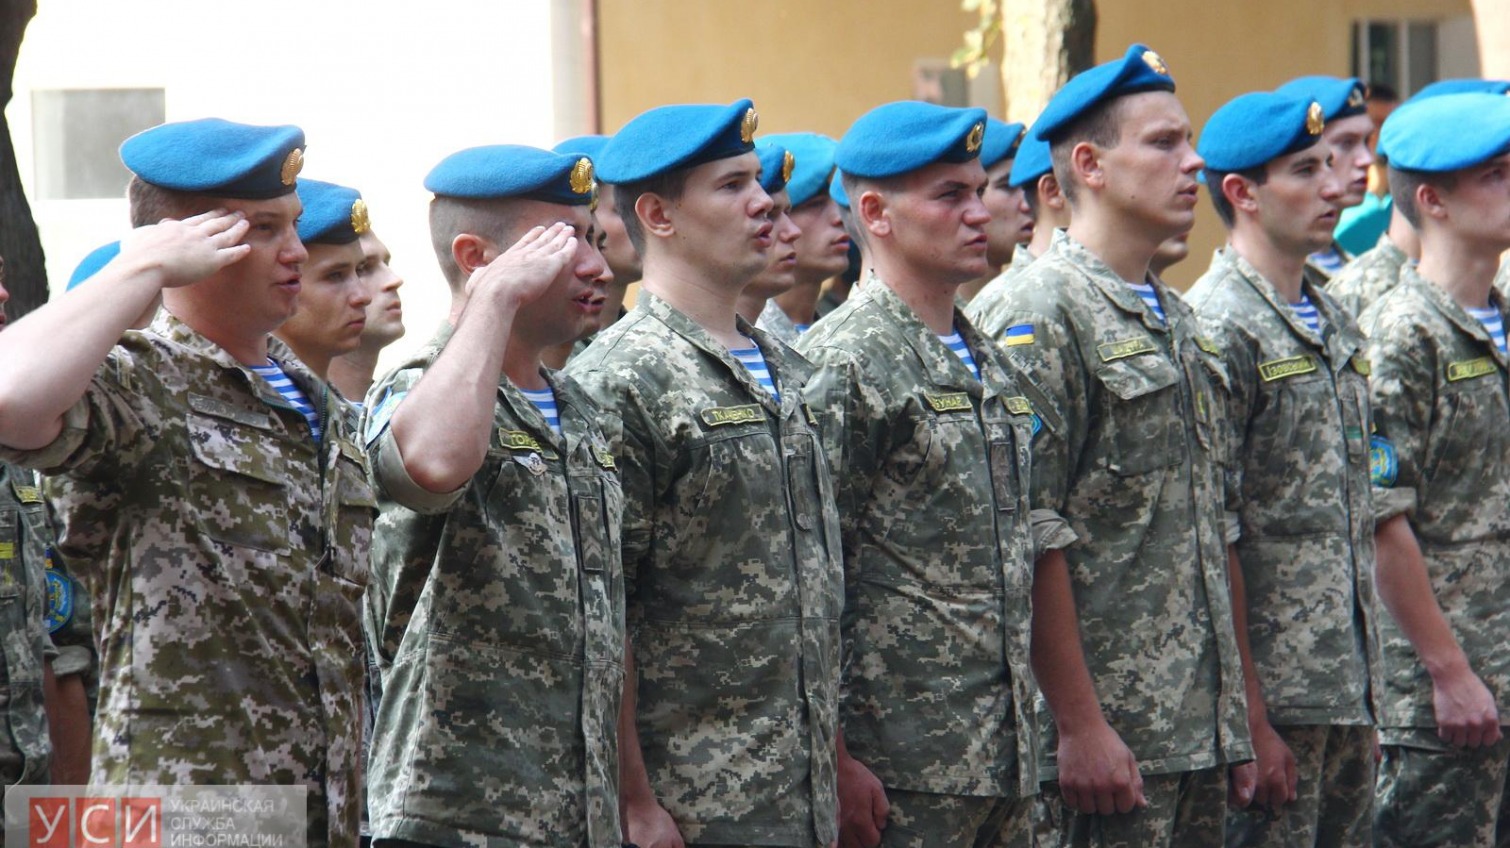  Памятник в честь украинских ВДВшников появился на территории Одесской военной академии (фото) «фото»